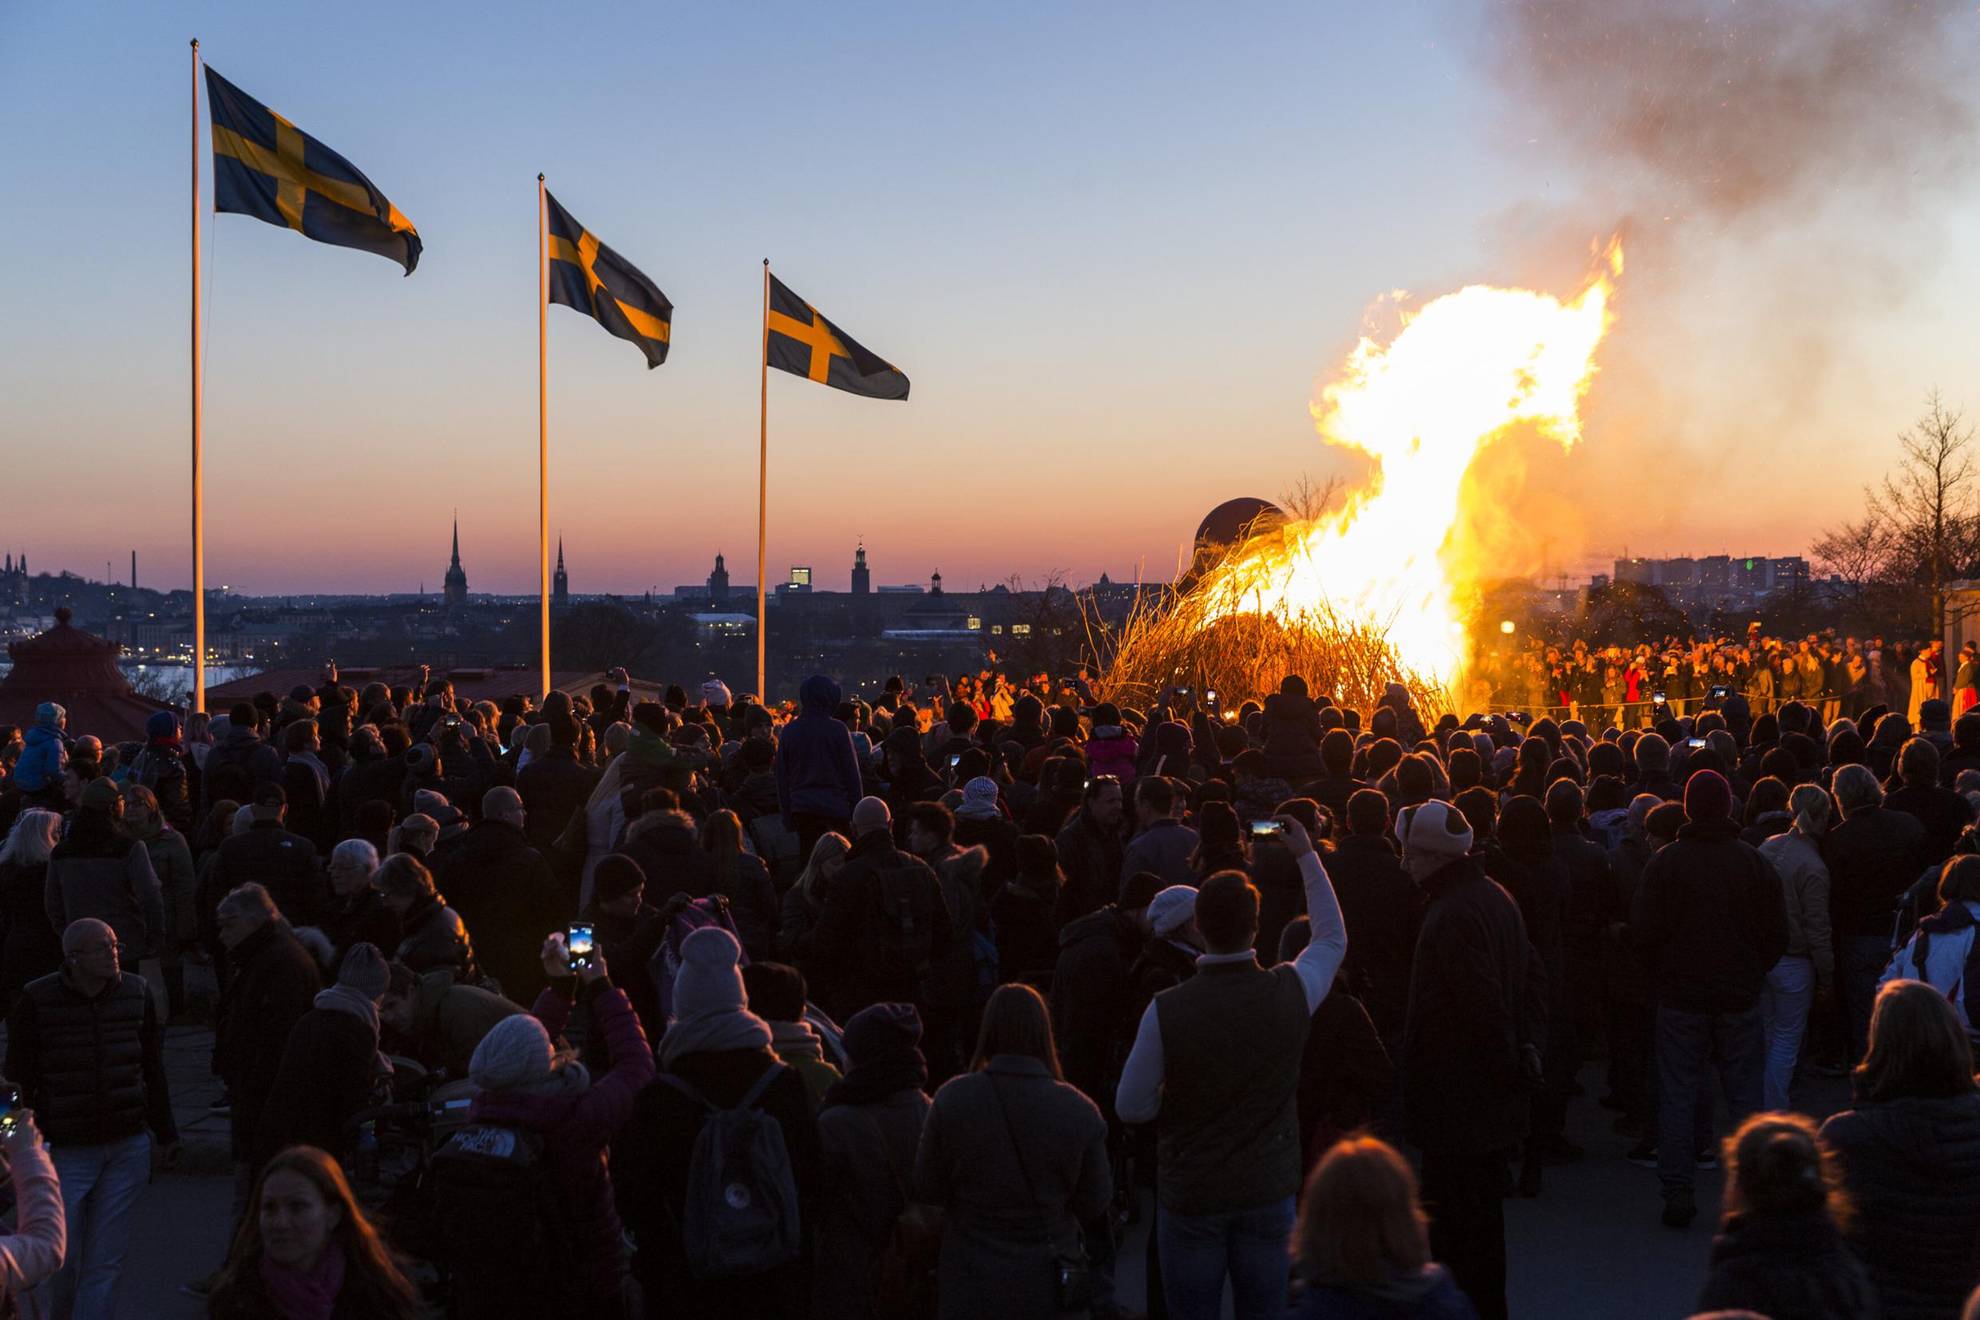 Mensen hebben zich verzameld rond een vreugdevuur om Walpurgisnacht te vieren. Drie Zweedse vlaggen wapperen in de wind.